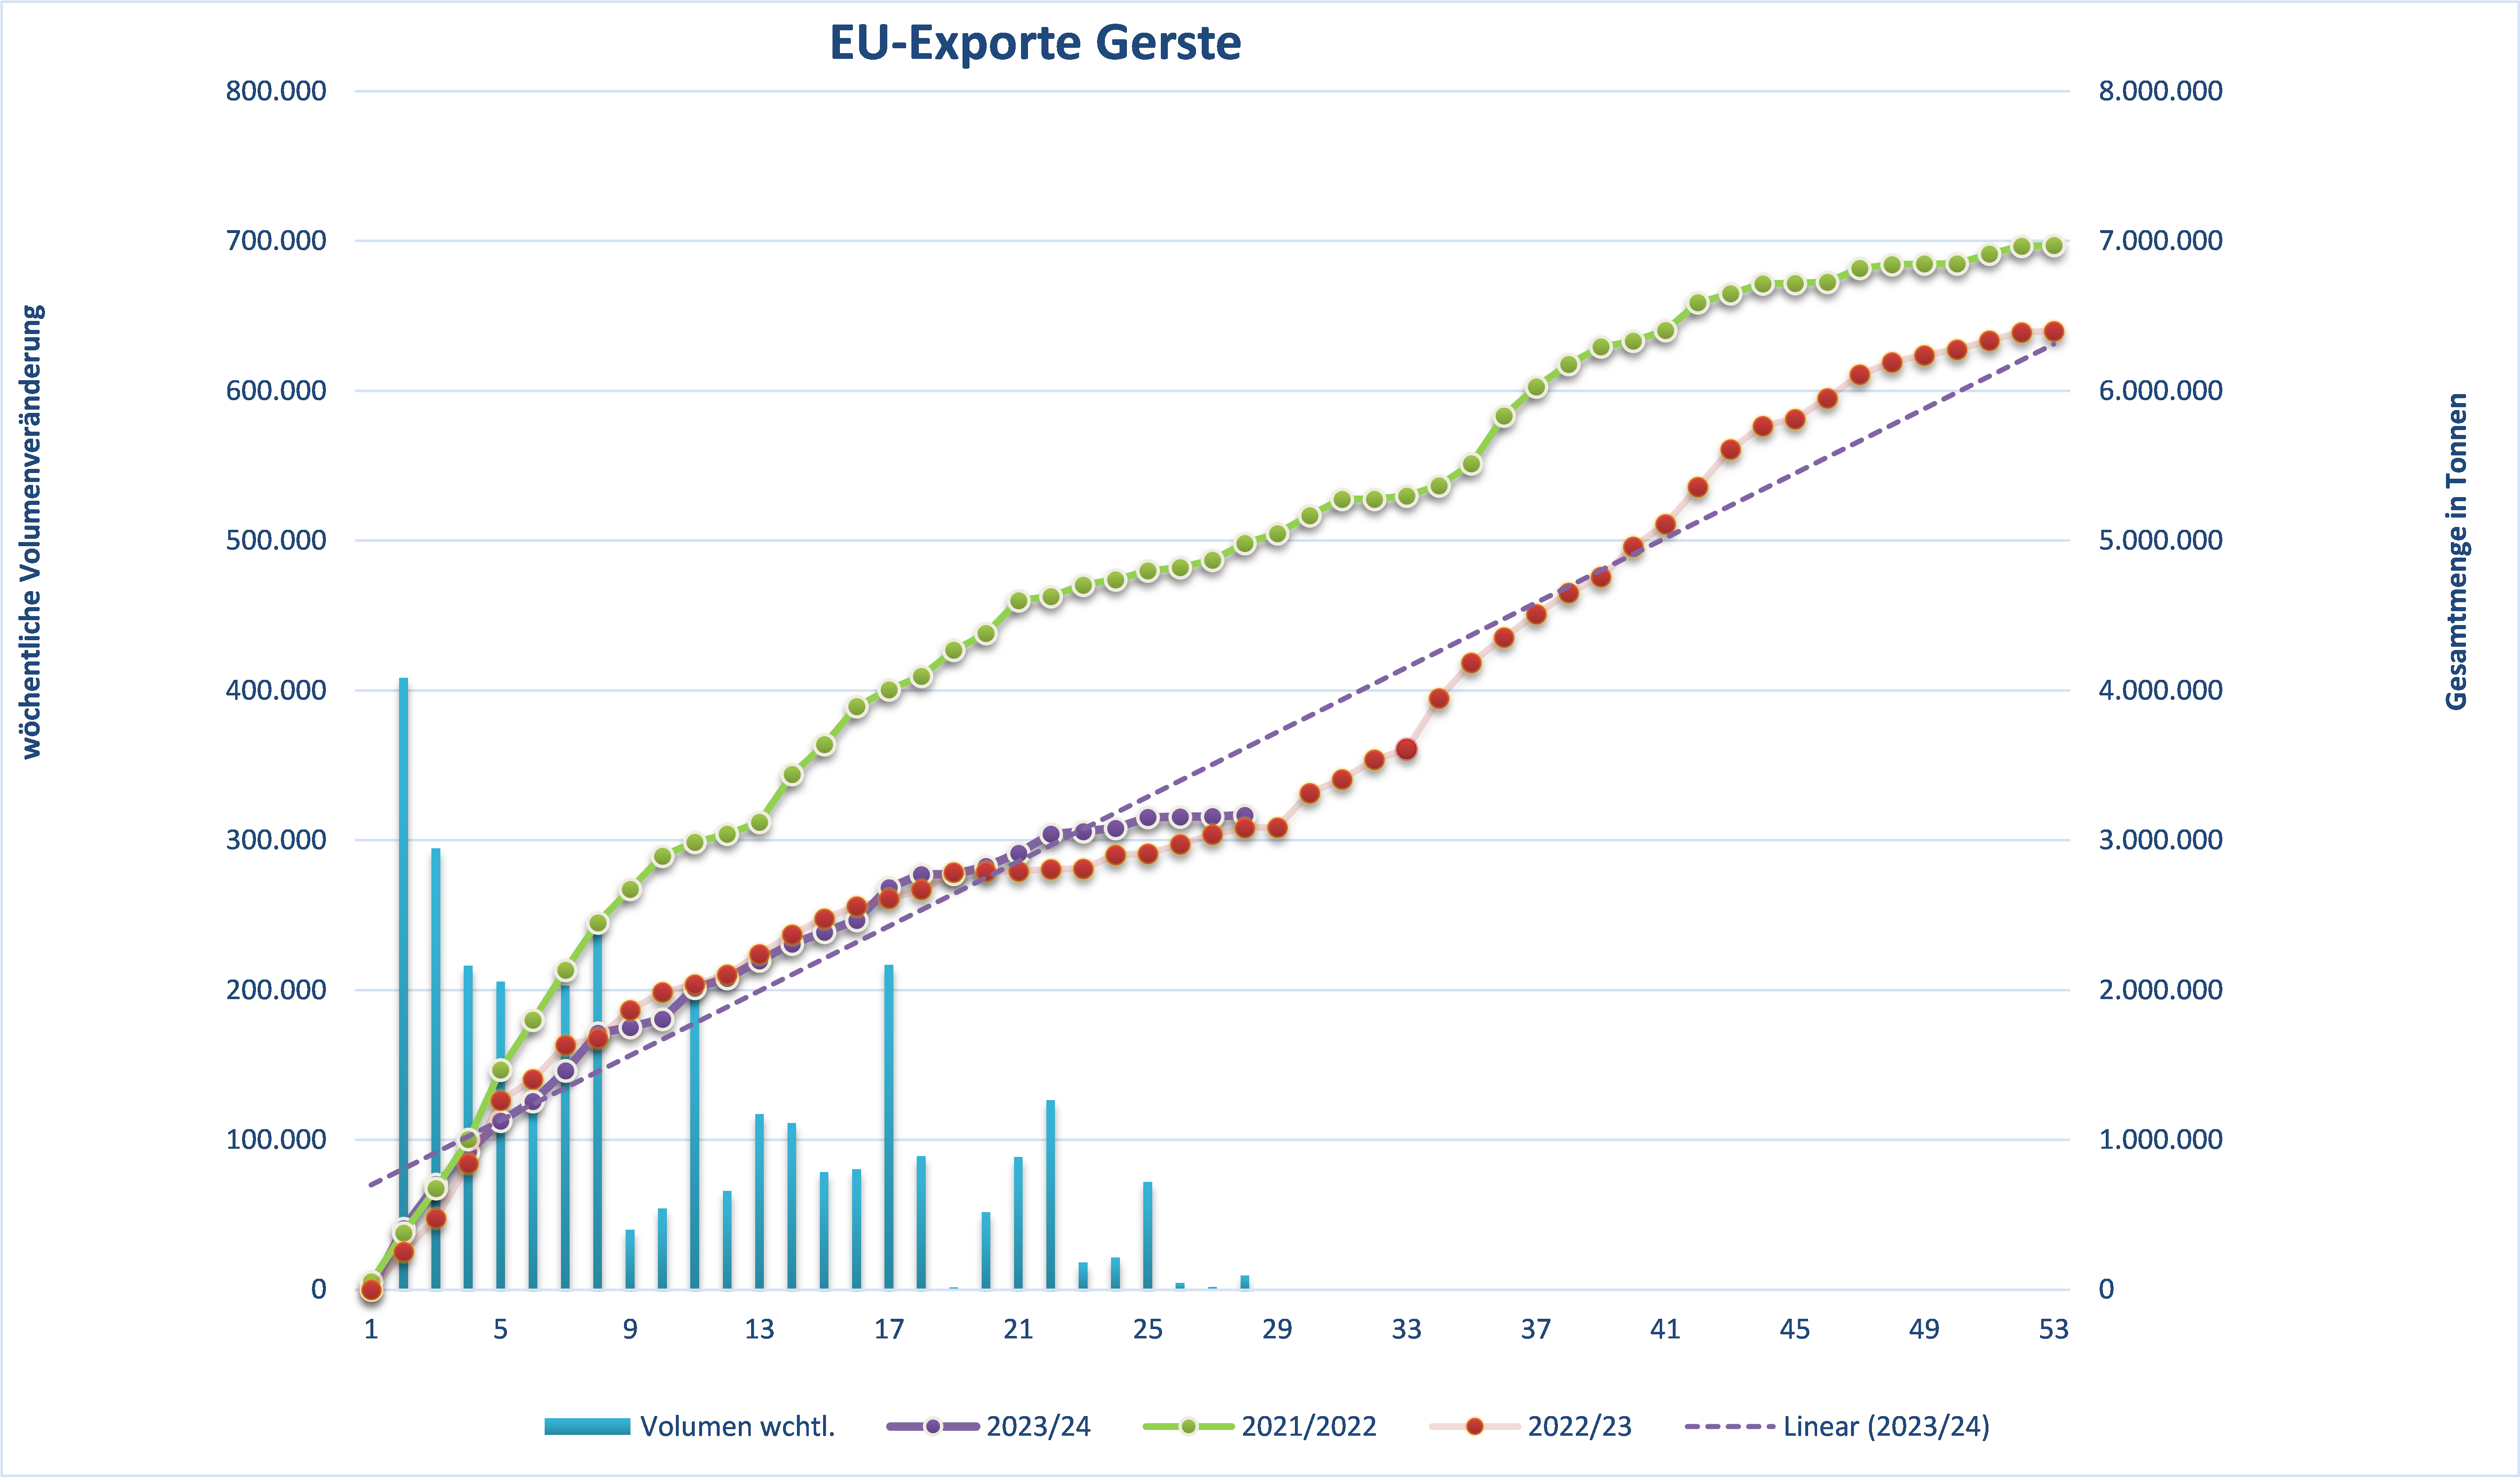 Überarbeitete Exportzahlen für EU-Gerste, die einen Anstieg in der internationalen Nachfrage anzeigen.